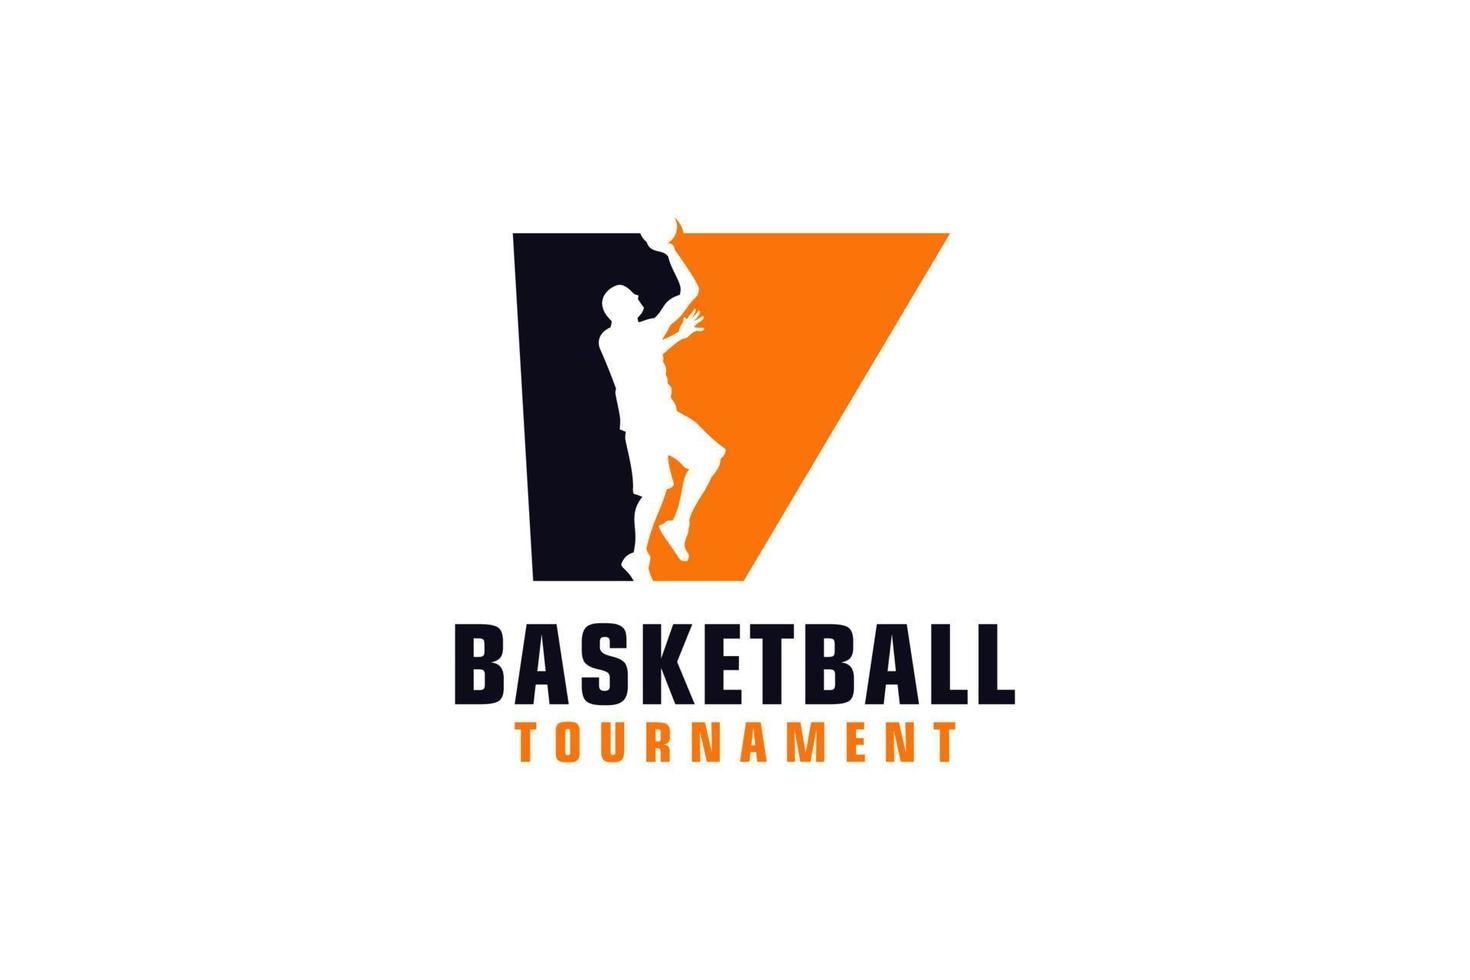 Buchstabe v mit Basketball-Logo-Design. Vektordesign-Vorlagenelemente für Sportteams oder Corporate Identity. vektor